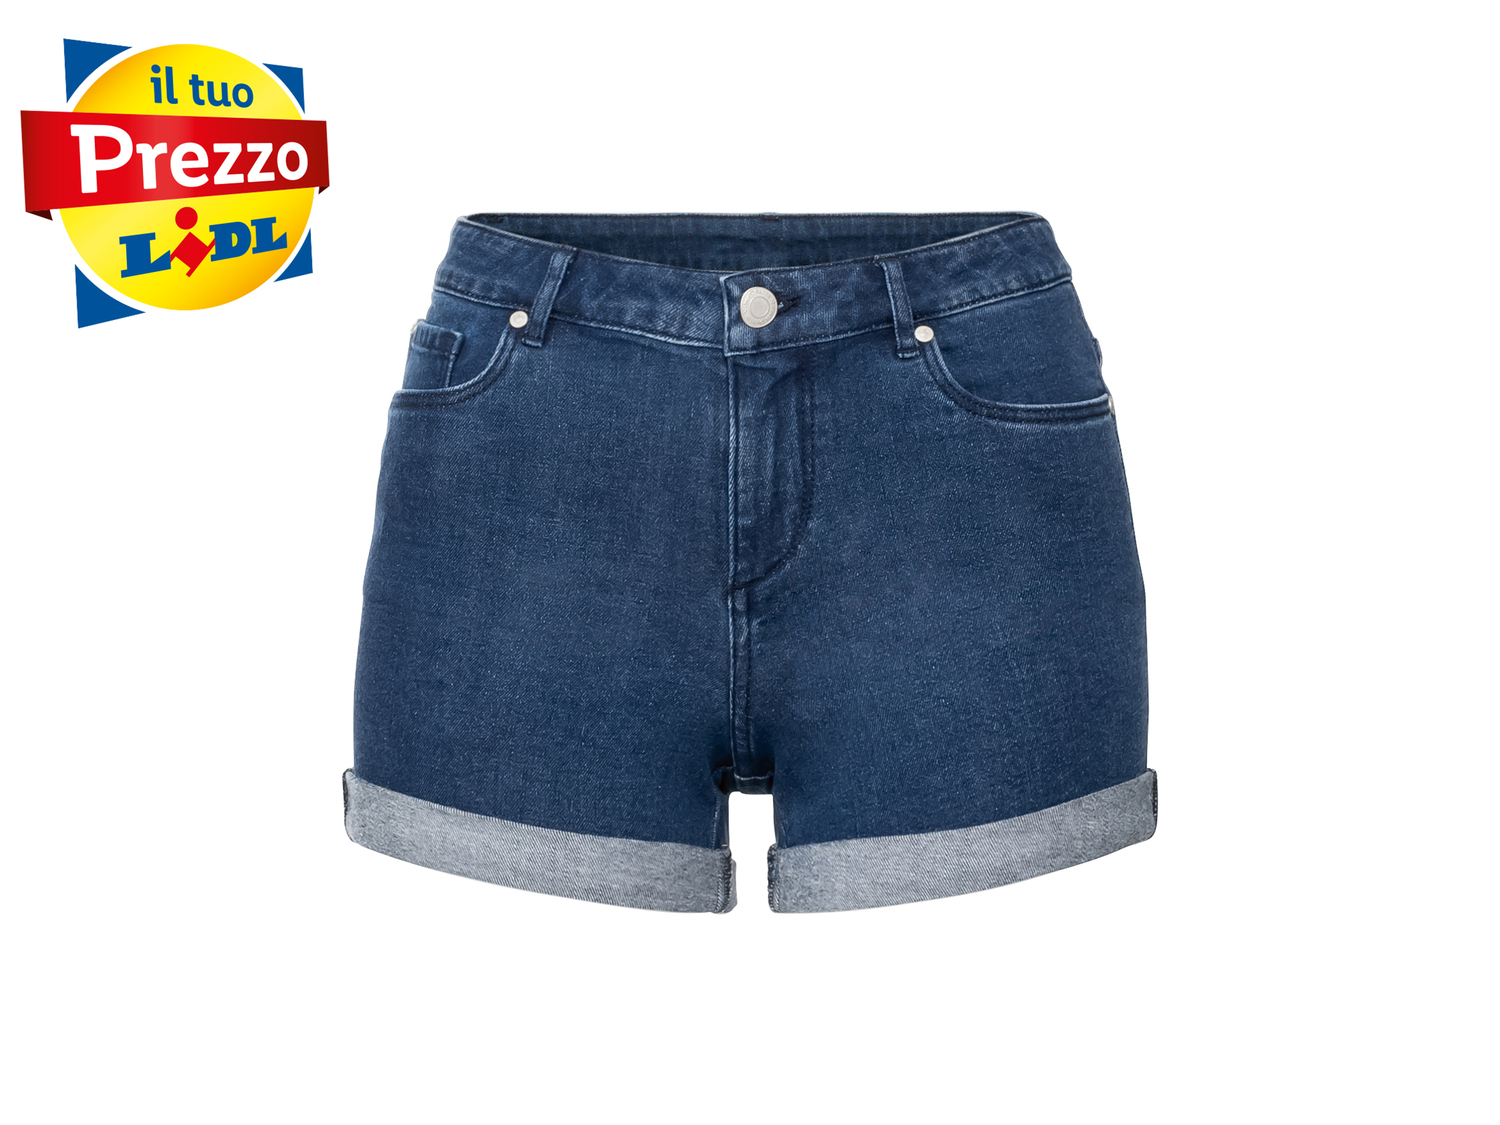 Shorts in jeans da donna Esmara, prezzo 6.99 € 
Misure: 38-48
Taglie disponibili

Caratteristiche

- ...